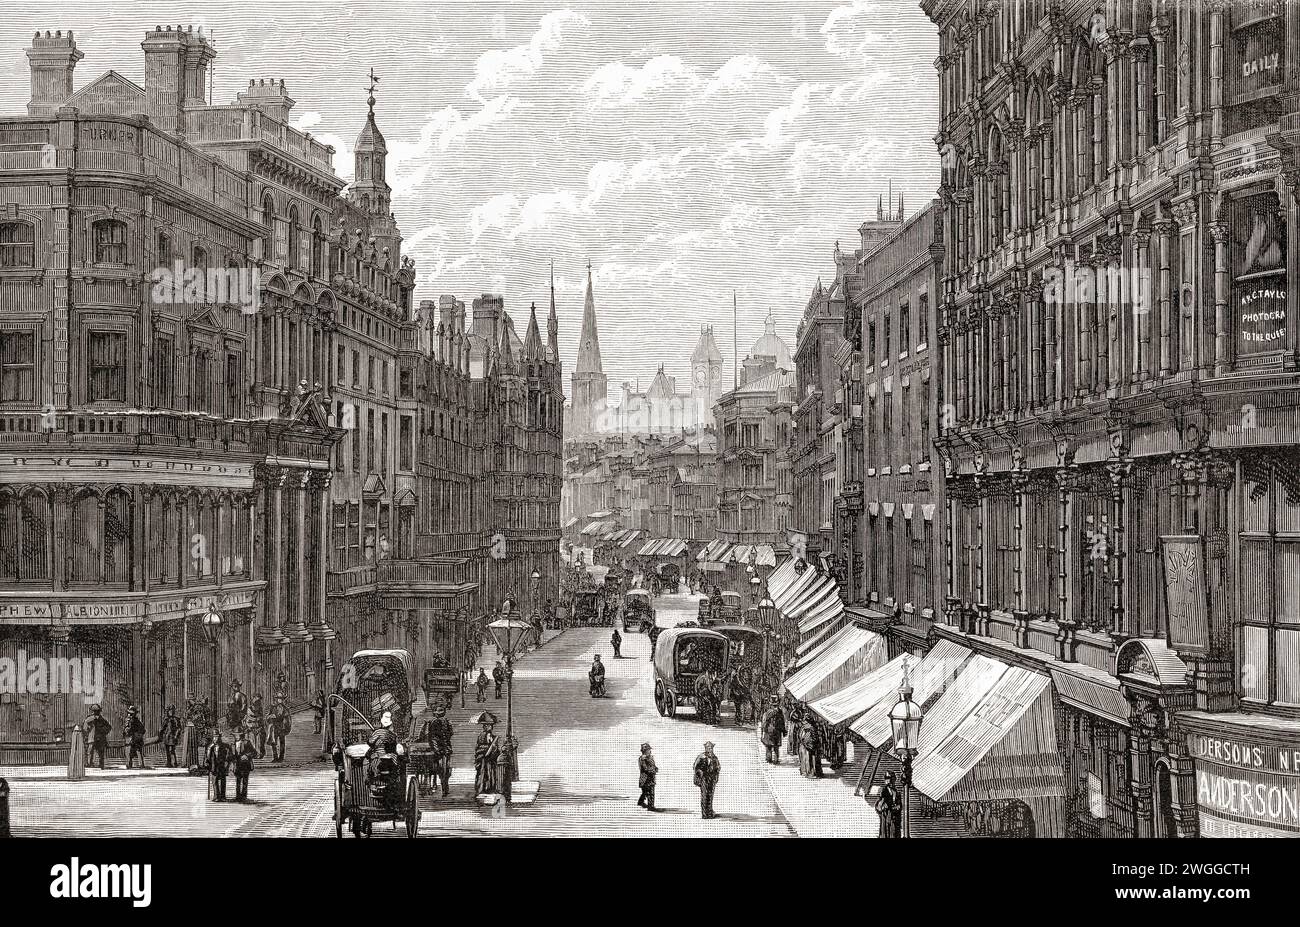 New Street, Birmingham, Angleterre. Vu ici lors de la visite de la reine Victoria à Birmingham le 23 mars 1887, l'année du Jubilé d'Or. Tiré du London Illustrated News, publié le 26 mars 1887. Banque D'Images